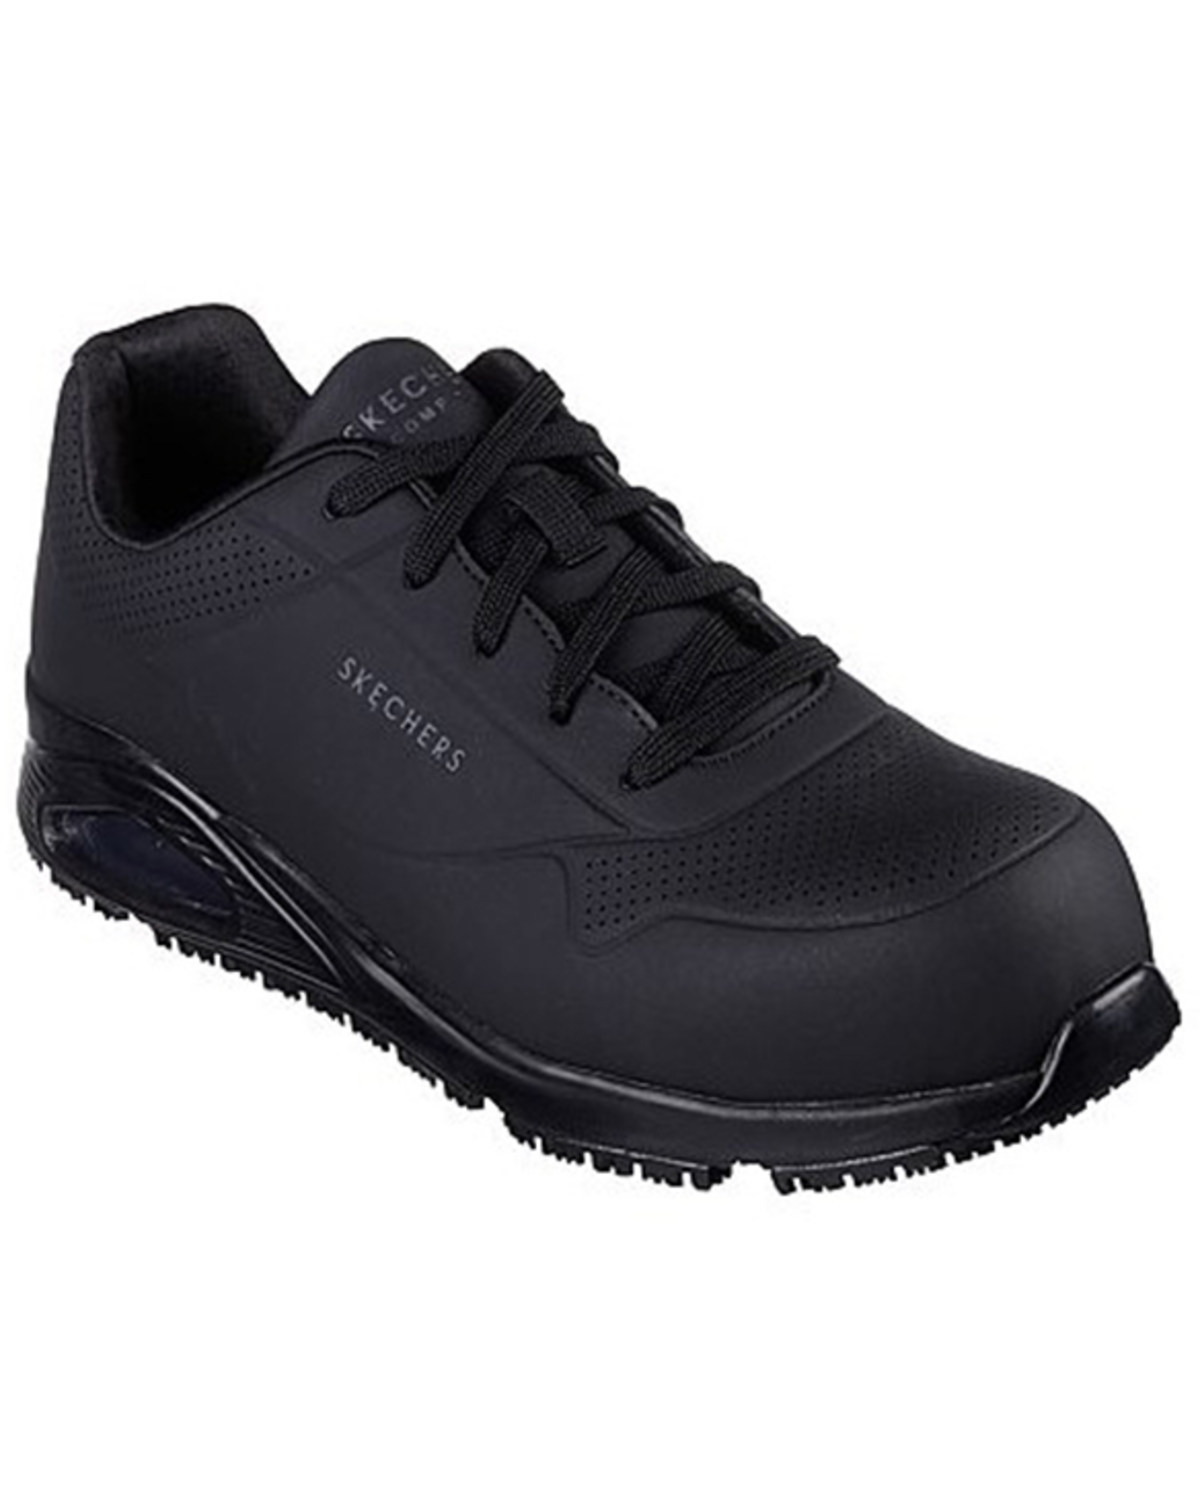 Skechers Men's Uno Sr-Deloney Work Shoes - Composite Toe